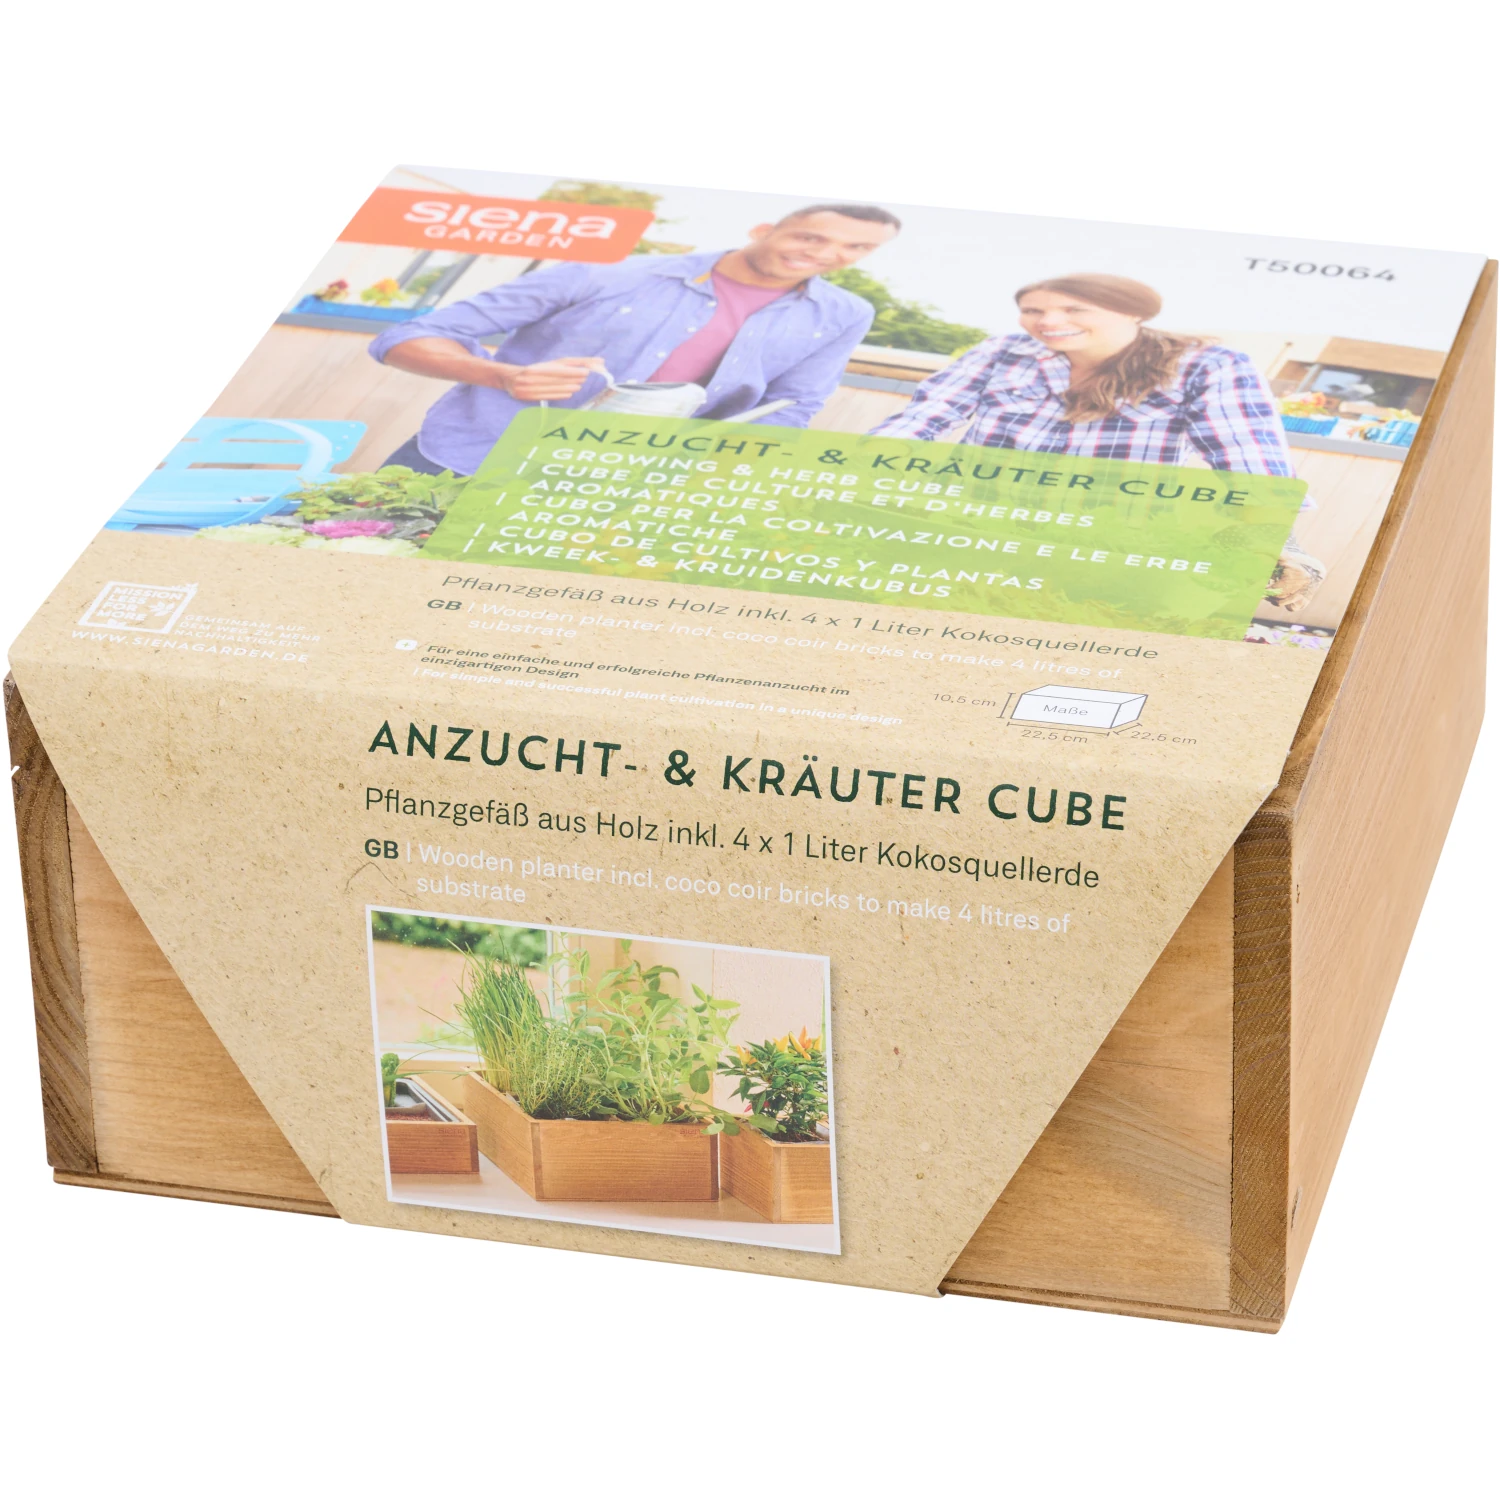 Anzucht- & Kräuter Cube